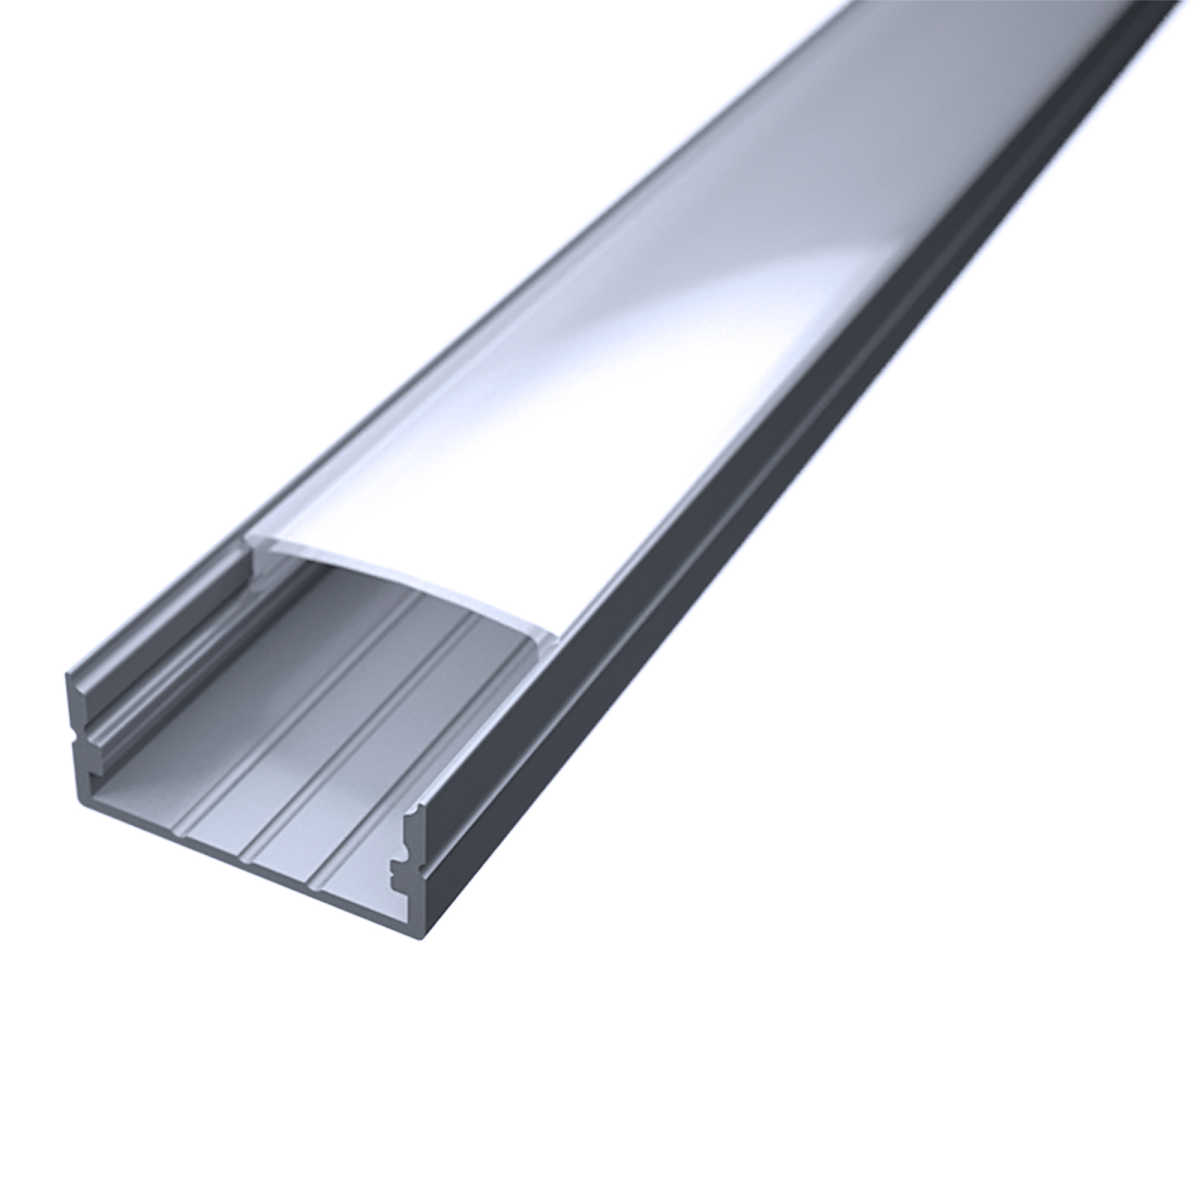 LED Flachprofil "Slim-Line max" | Abdeckung diffus | Zuschnitt auf 120cm |